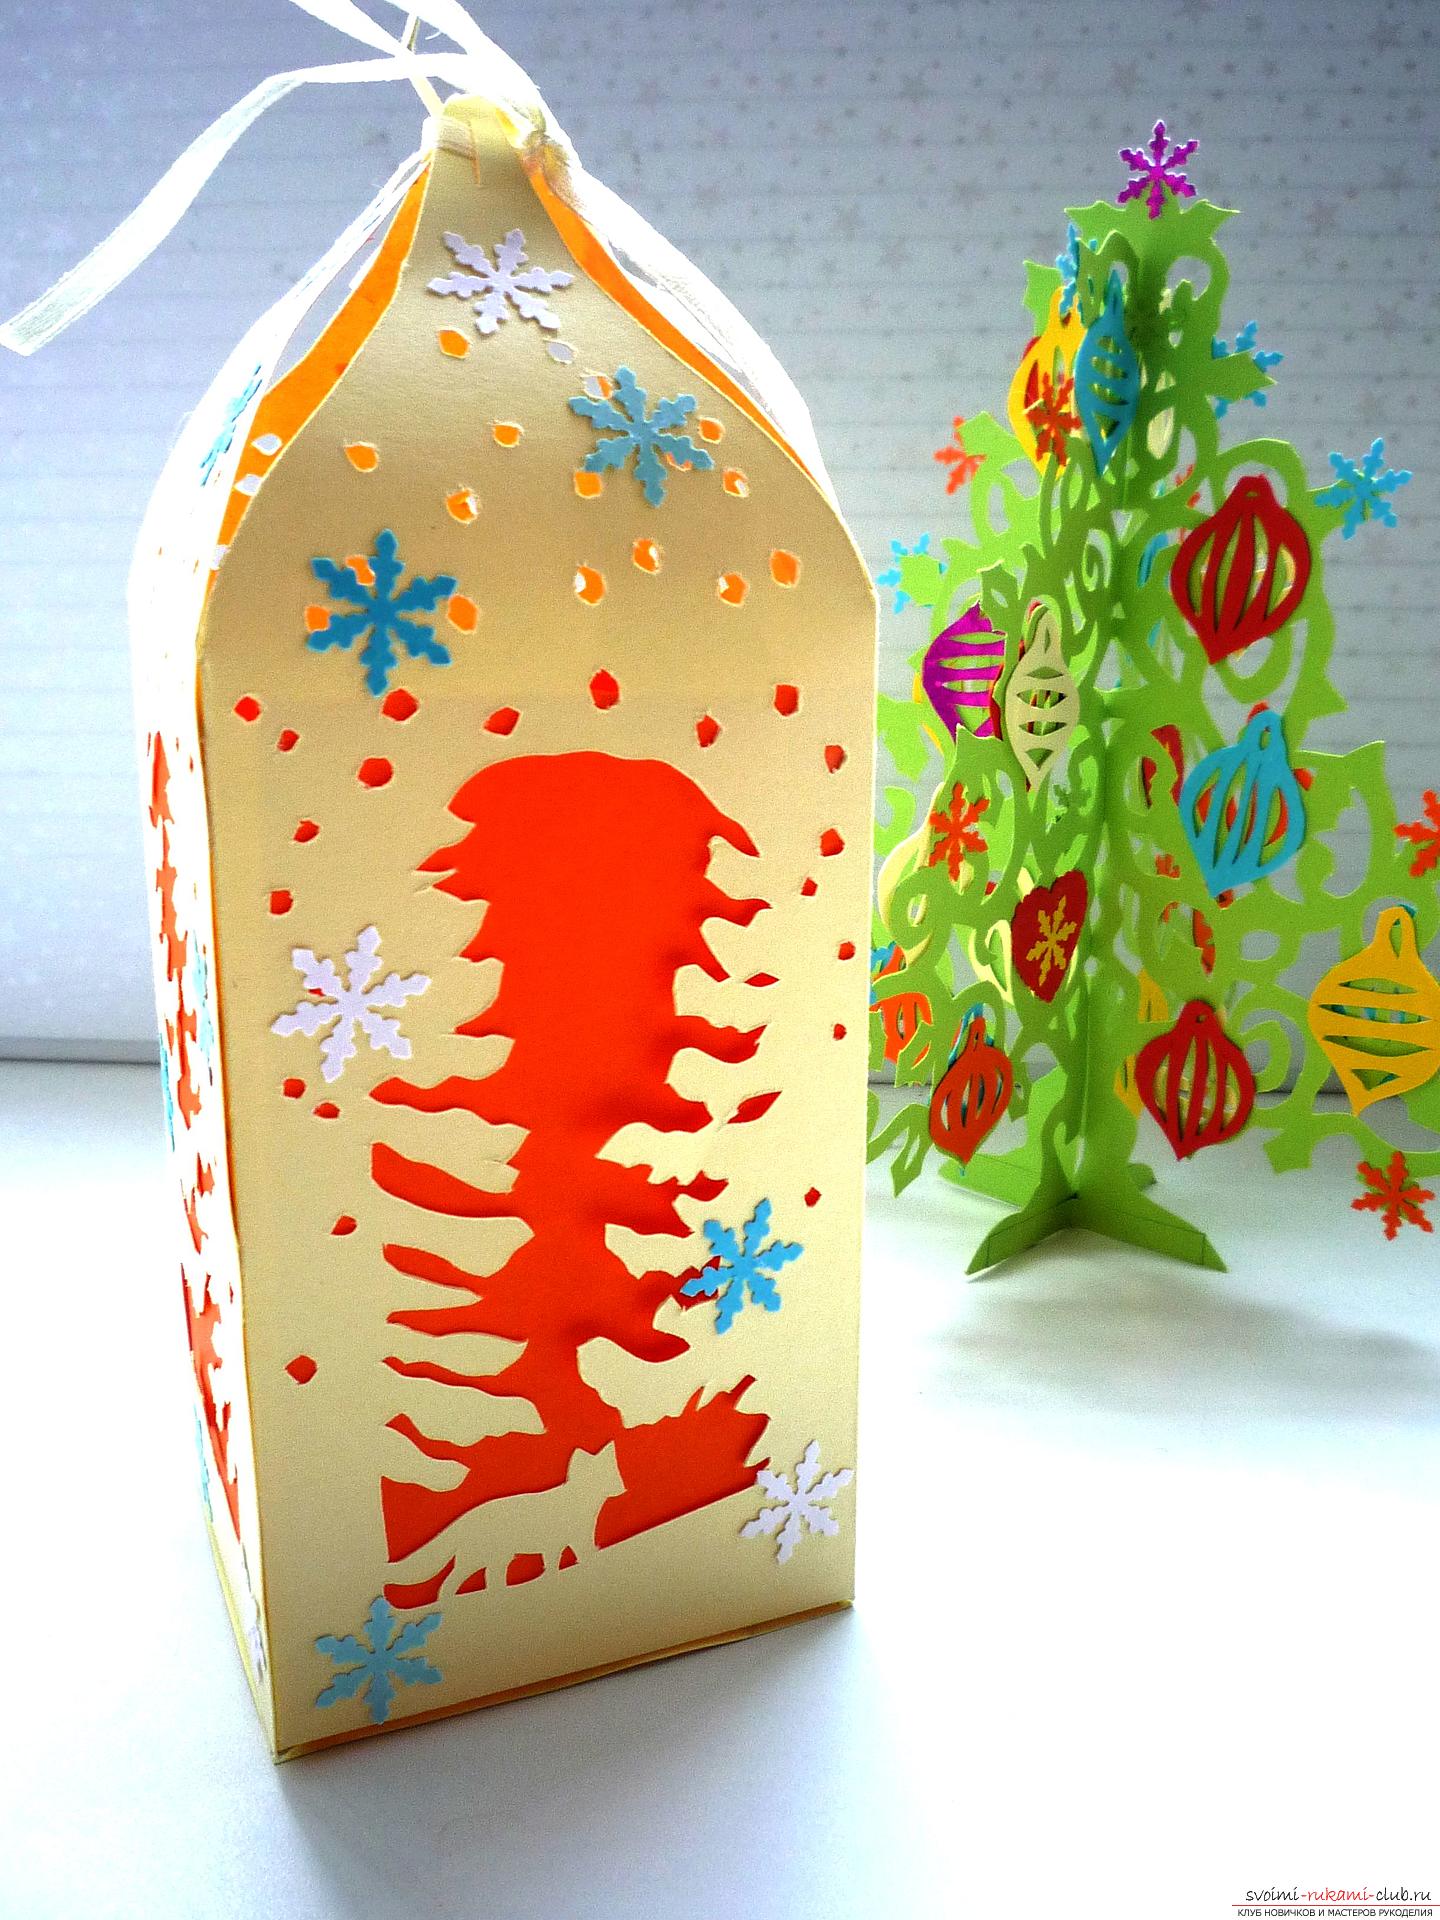 Мастер-класс научит как сделать новогоднюю поделку - коробку для сладкого подарка Зимний фонарь